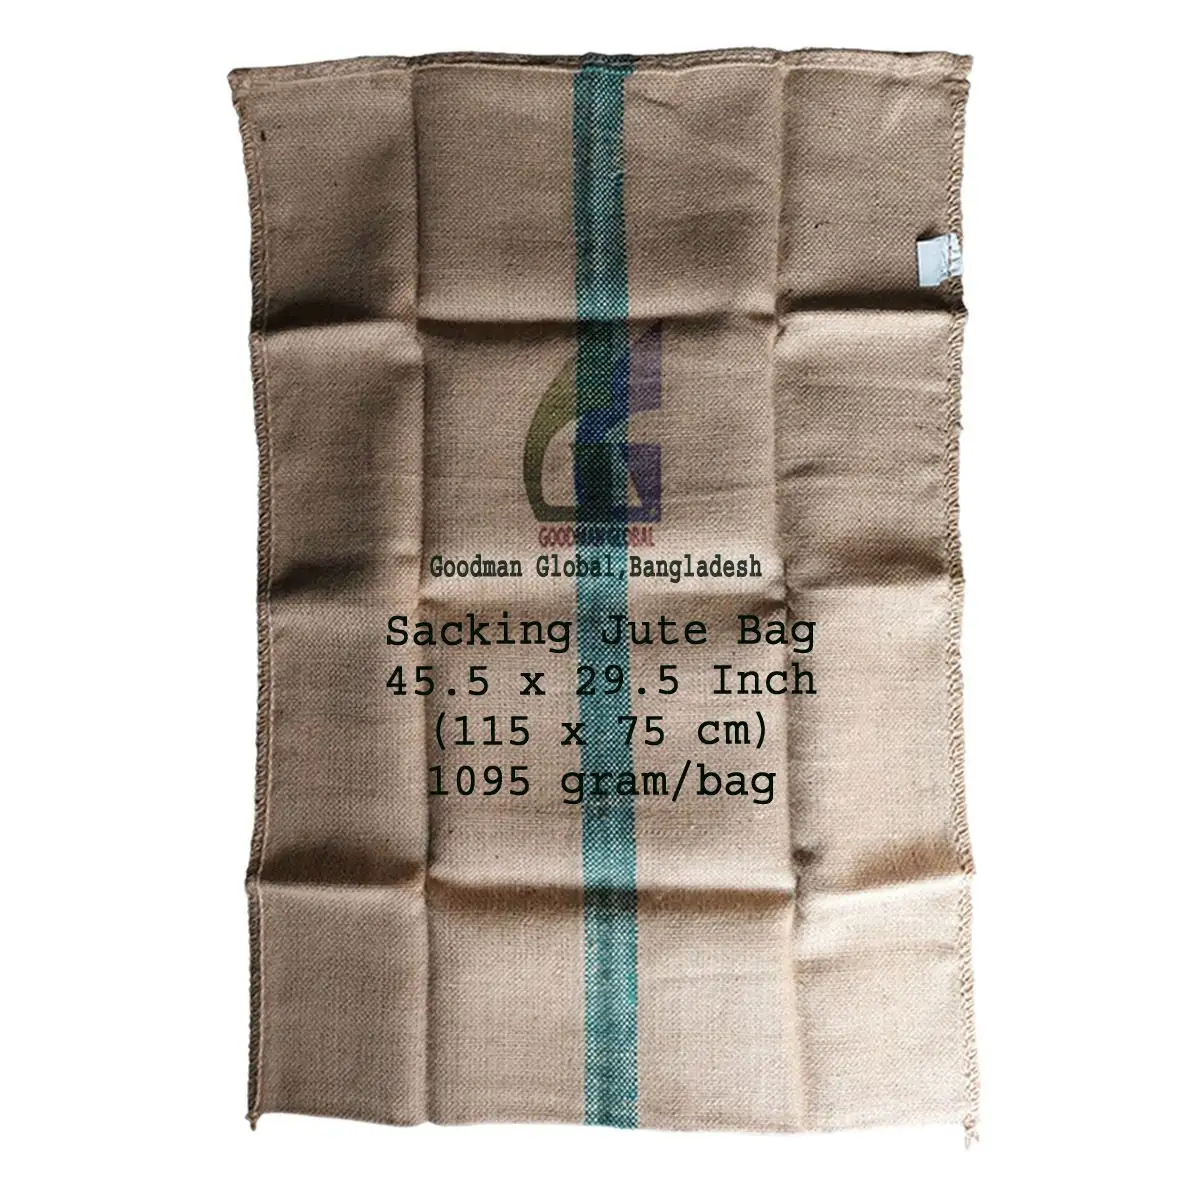 115x75 см, 1095 г, новые мешки, джутовые мешки, мешок, пищевой пустой мешок для кофе, какао-мешки, Goodman Global Бангладеш